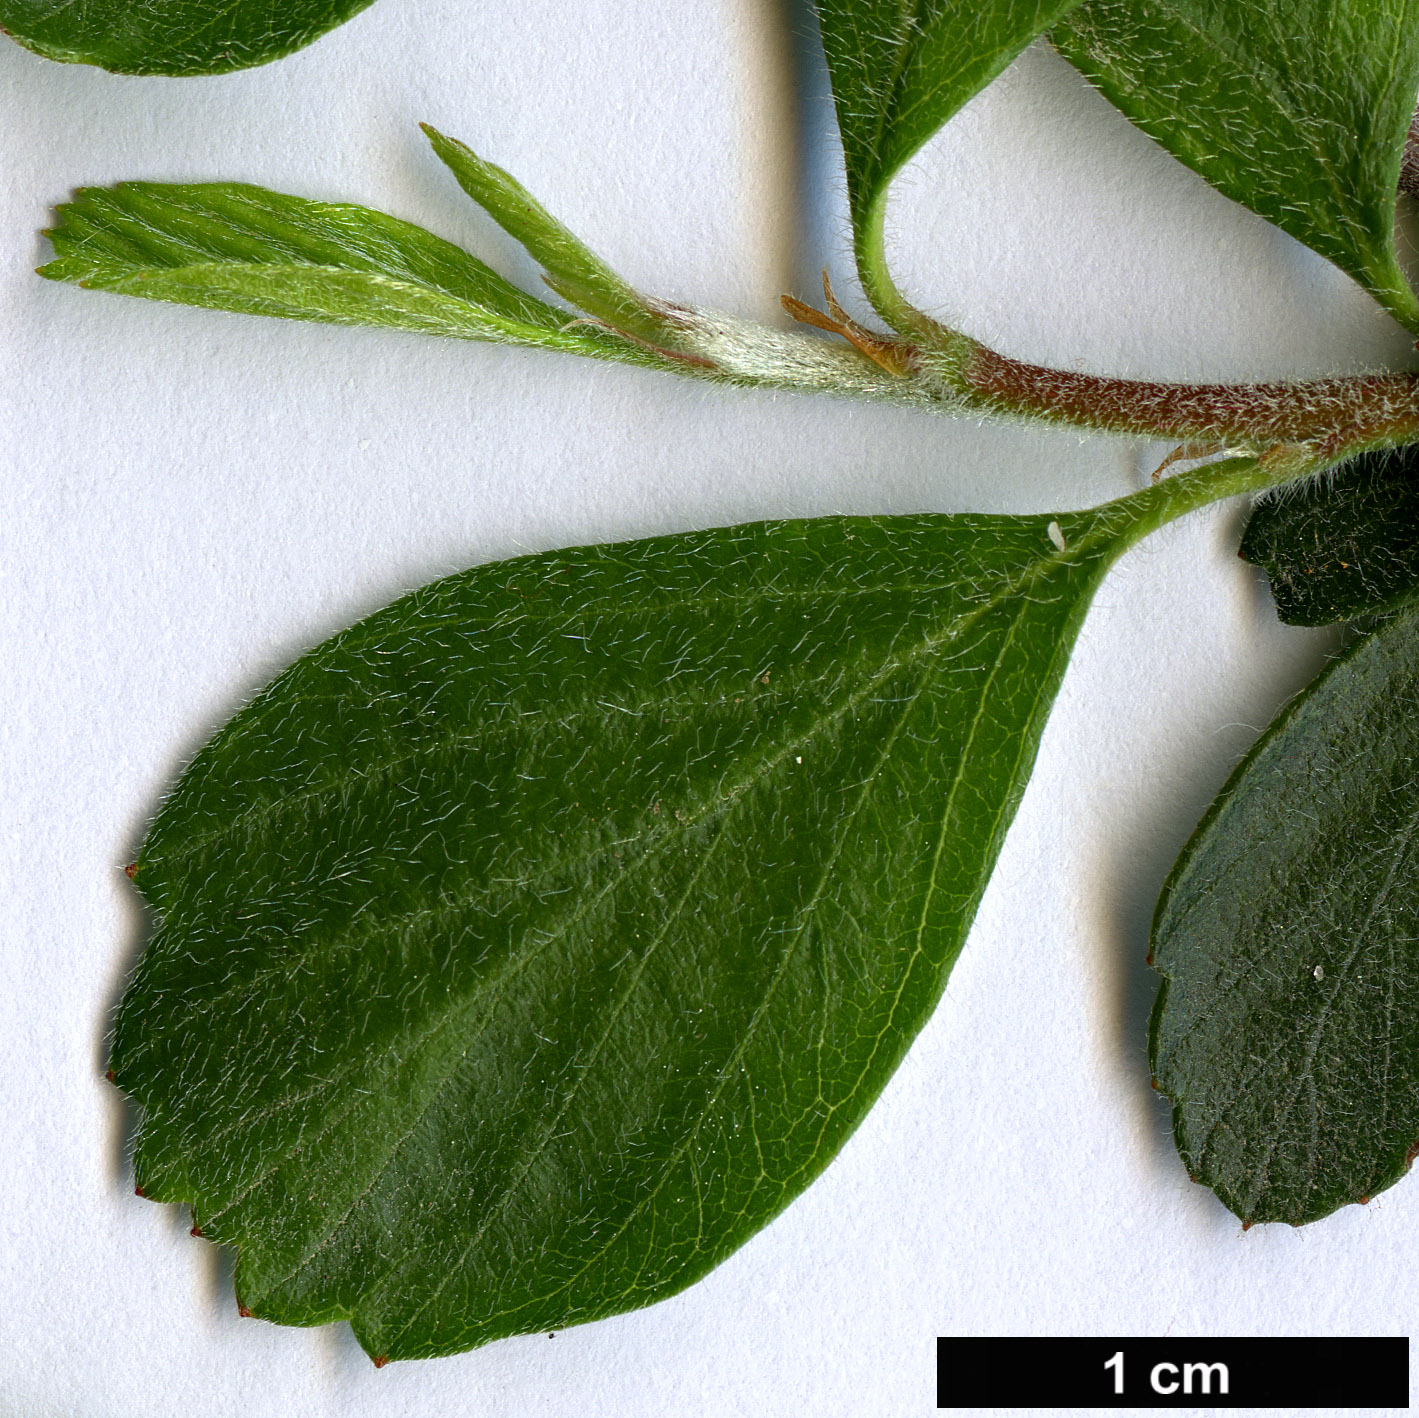 High resolution image: Family: Rosaceae - Genus: Cercocarpus - Taxon: montanus